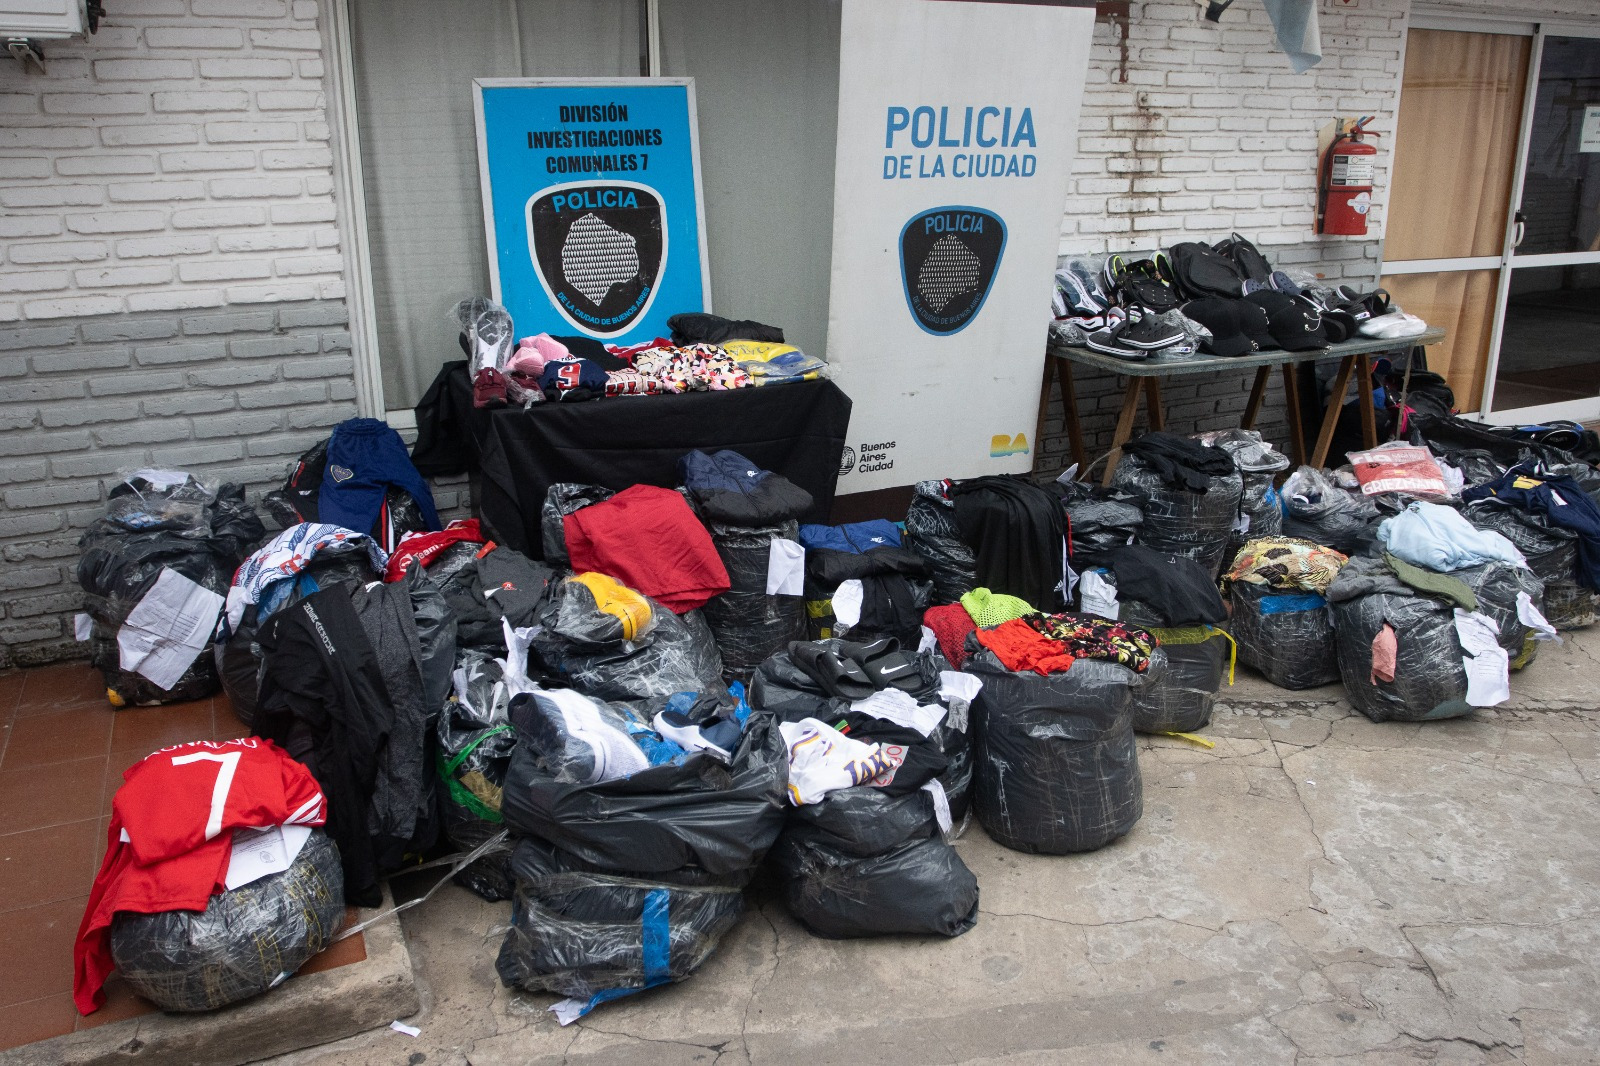 La Policía de la Ciudad donó a Cáritas gran cantidad de mercadería secuestrada en allanamientos